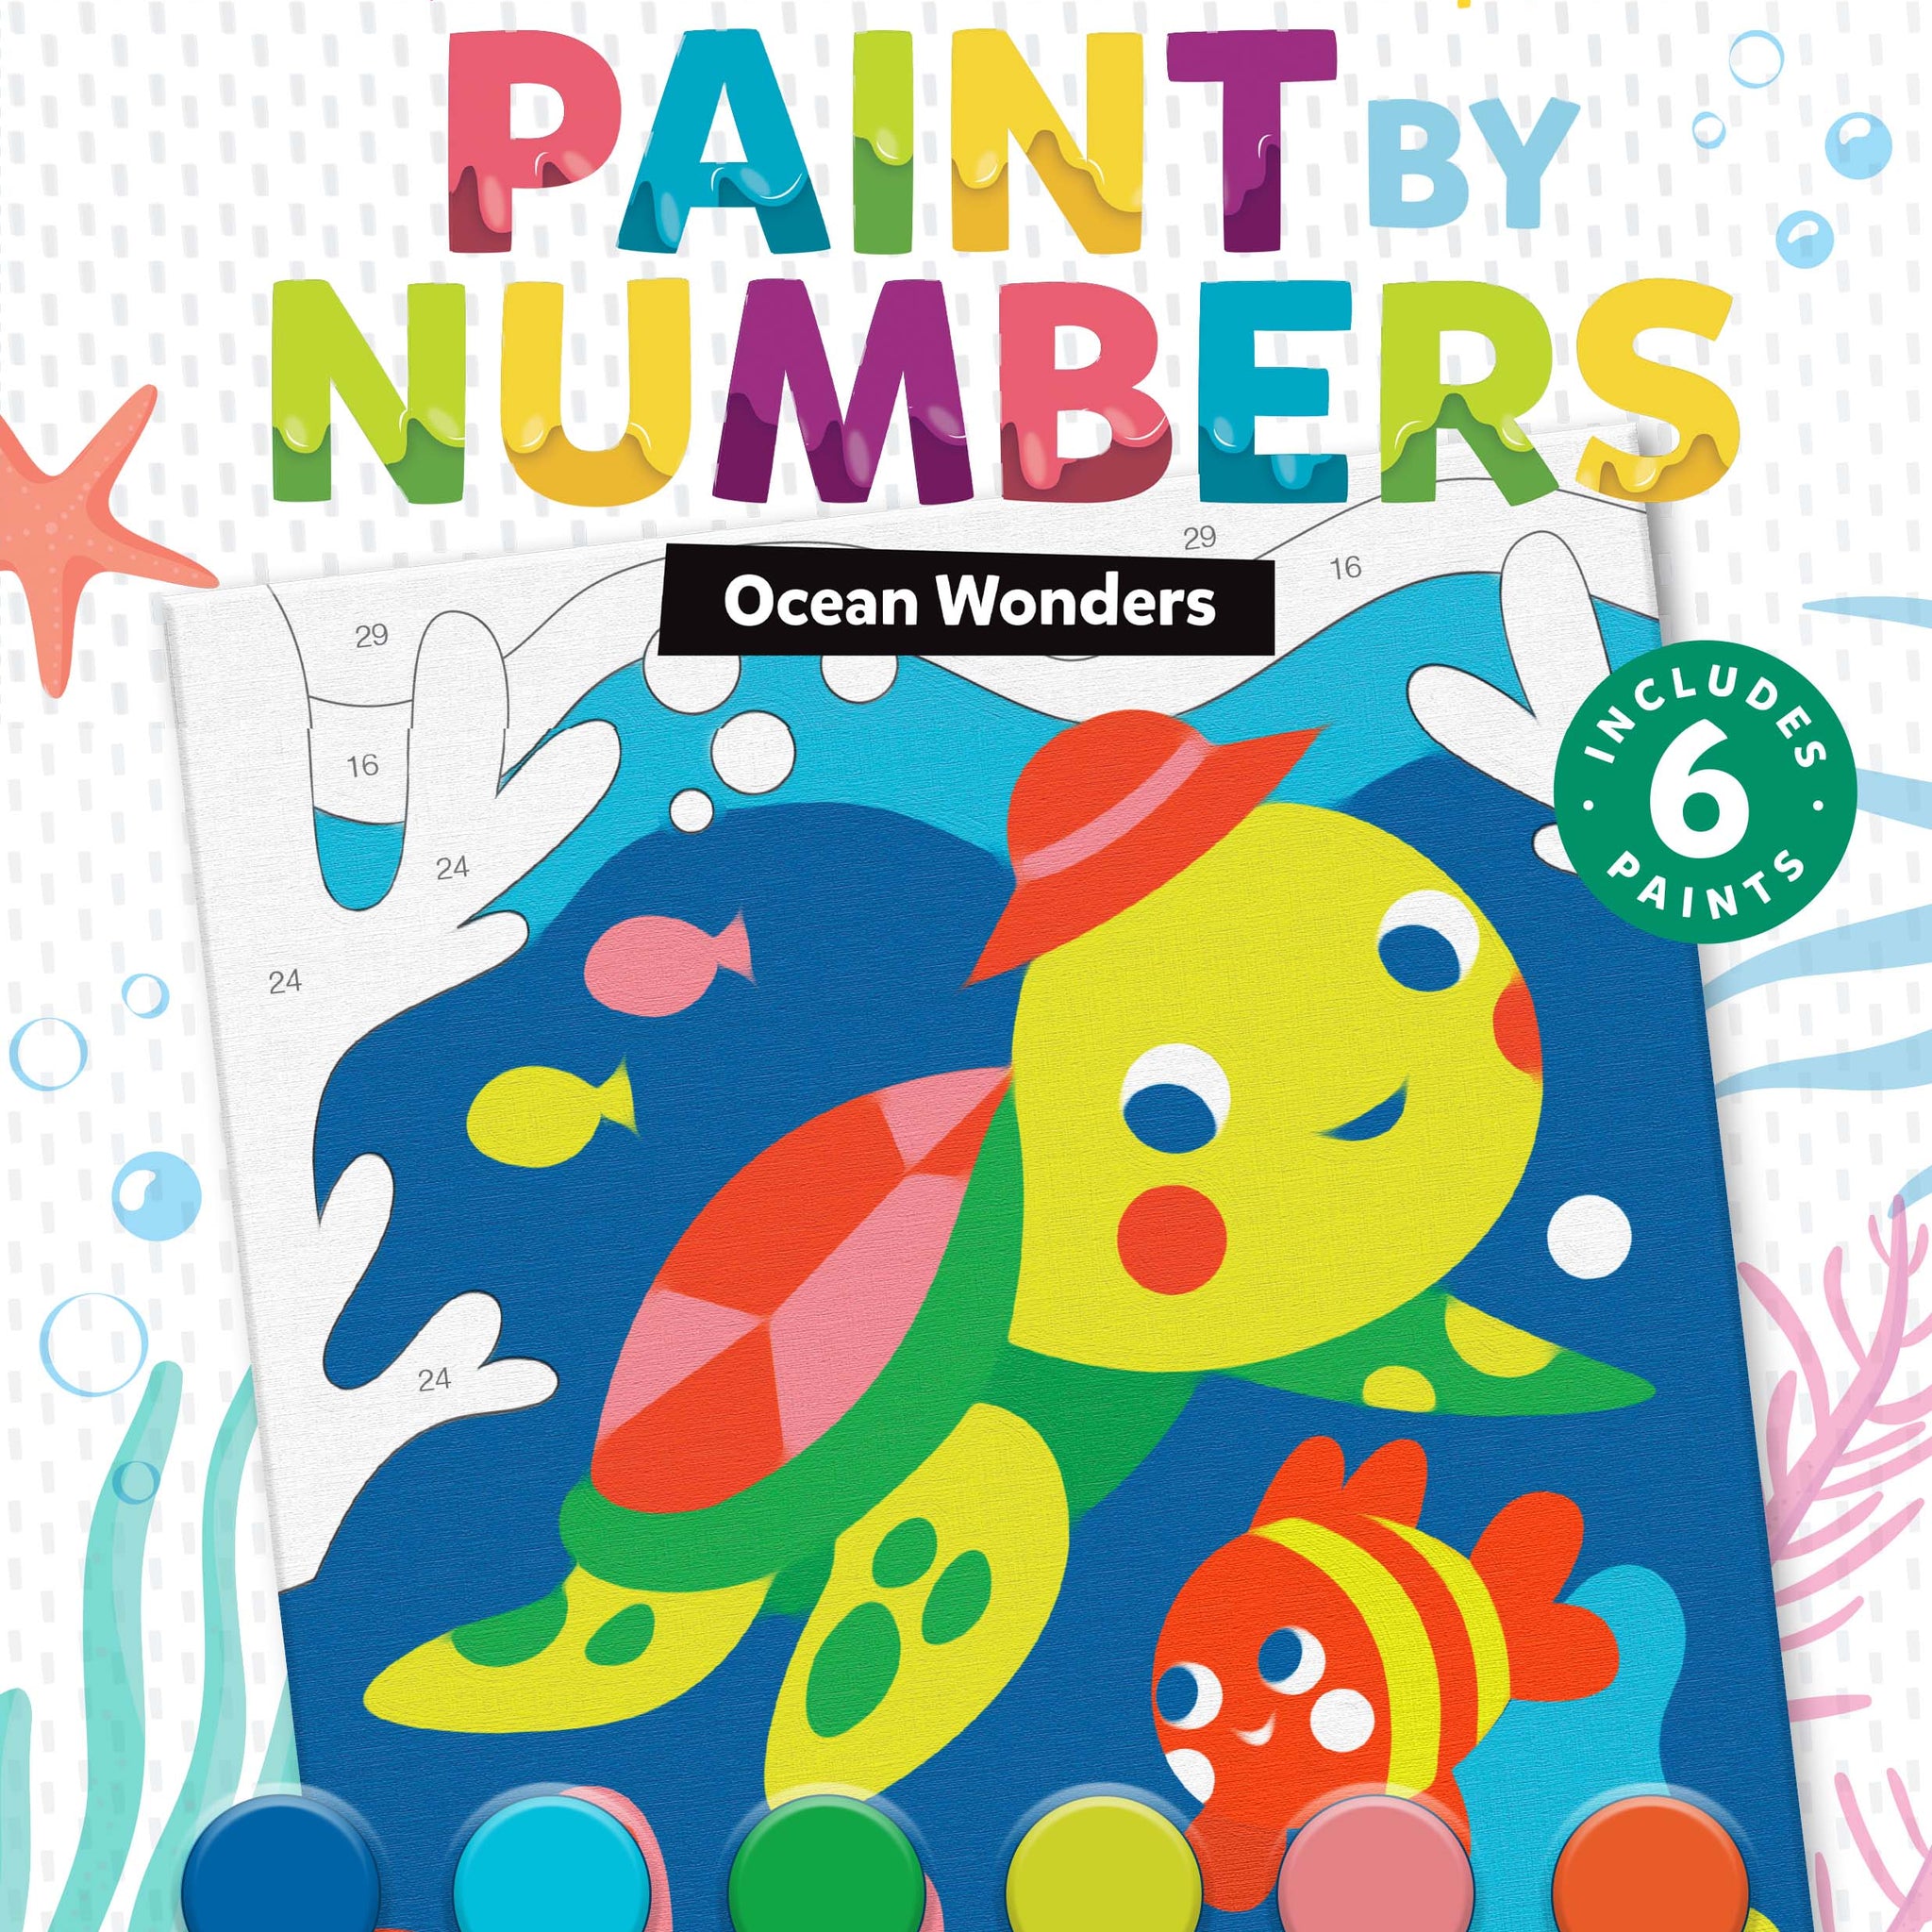 Paint by Numbers: Ocean Wonders